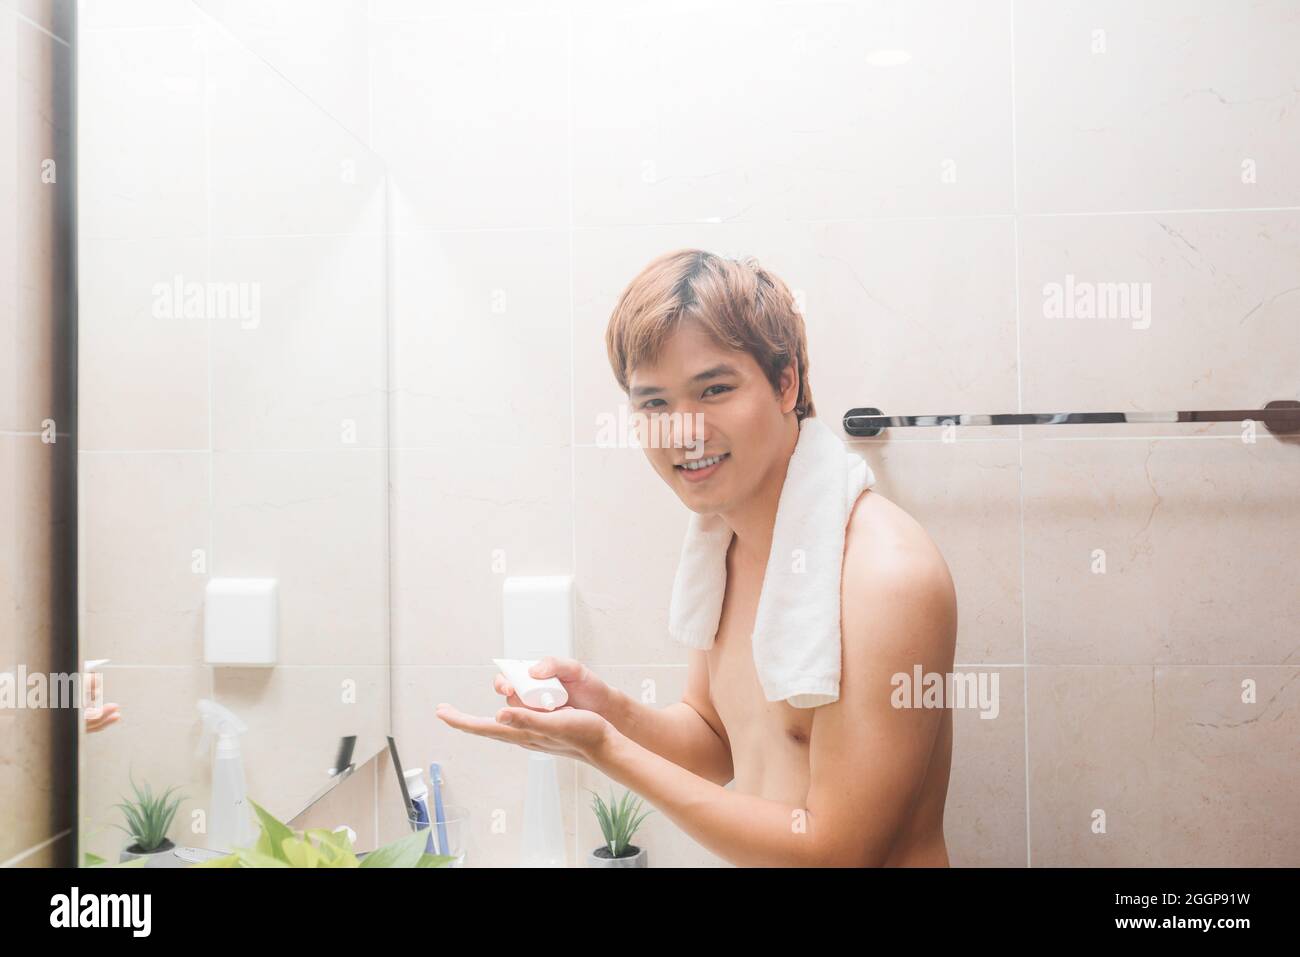 Der Mensch gießt Reinigungsmilch auf seine Hand Stockfoto